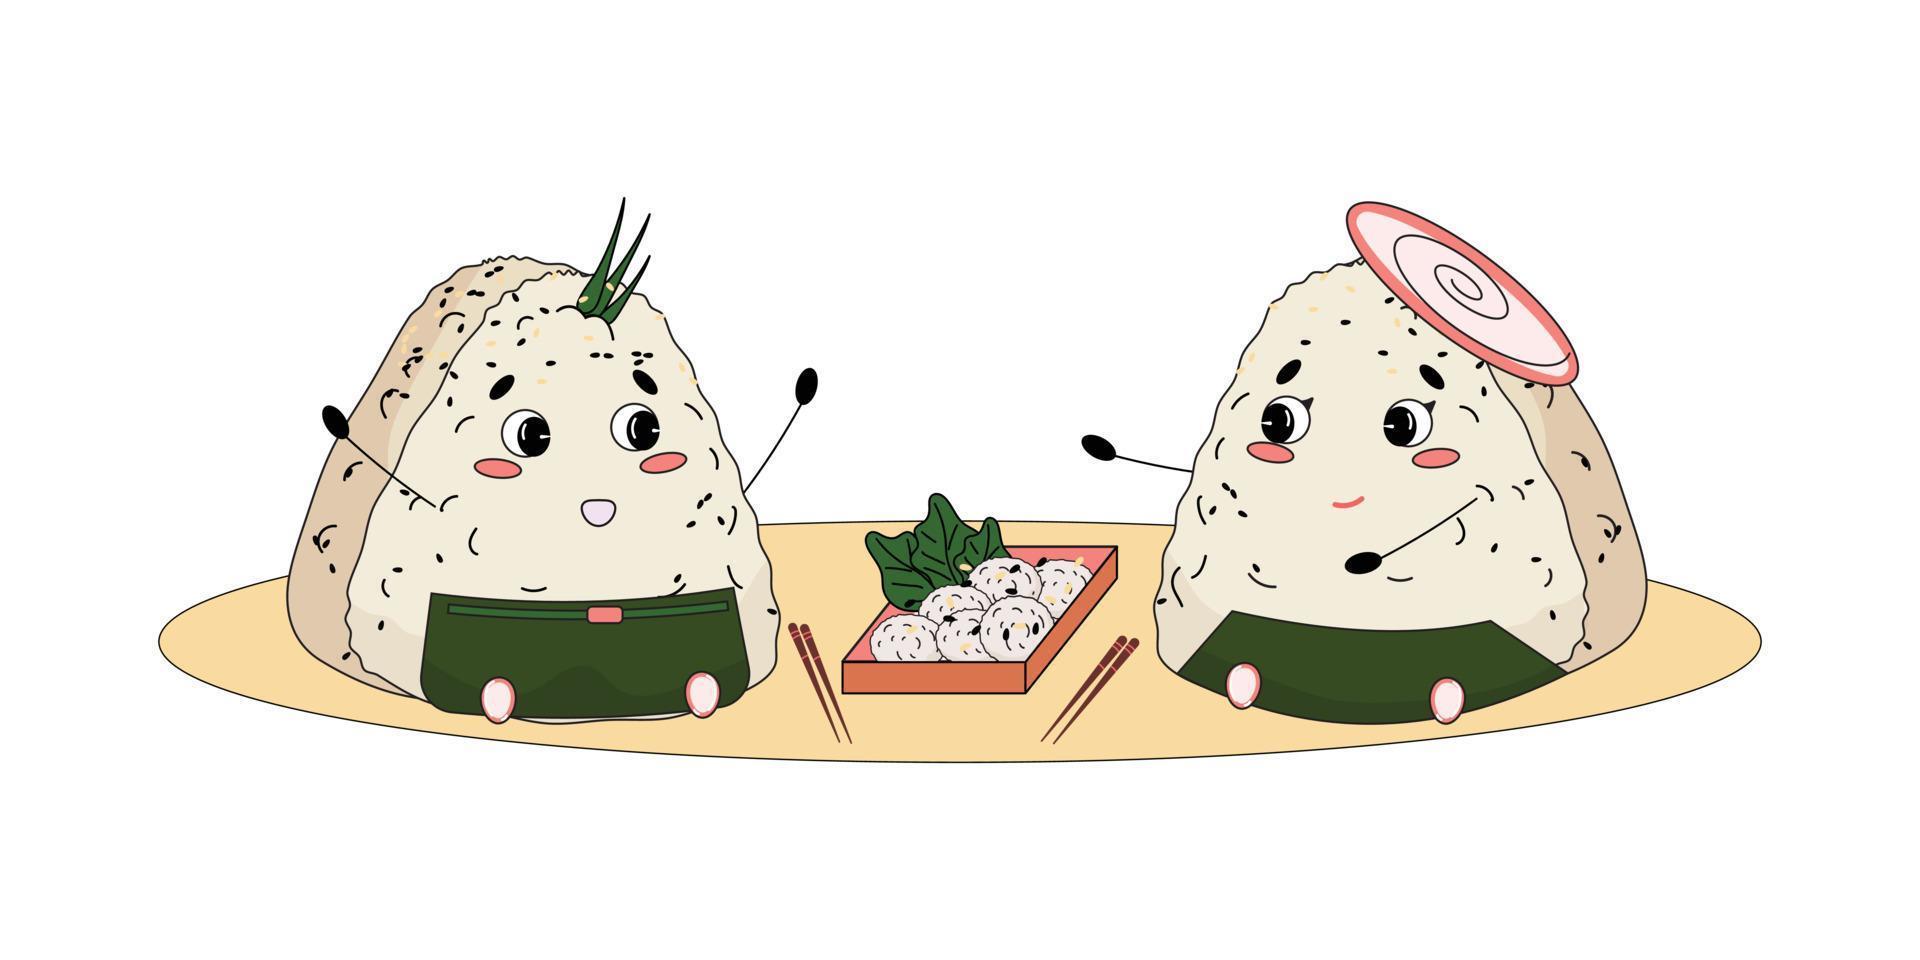 süßes onigiri-paar, das ein japanisches picknick hat und sich unterhält. dreieckiger japanischer Reisbällchen umwickelt mit Nori-Algen. japanischer Manga-Stil. Vektor-Illustration. vektor